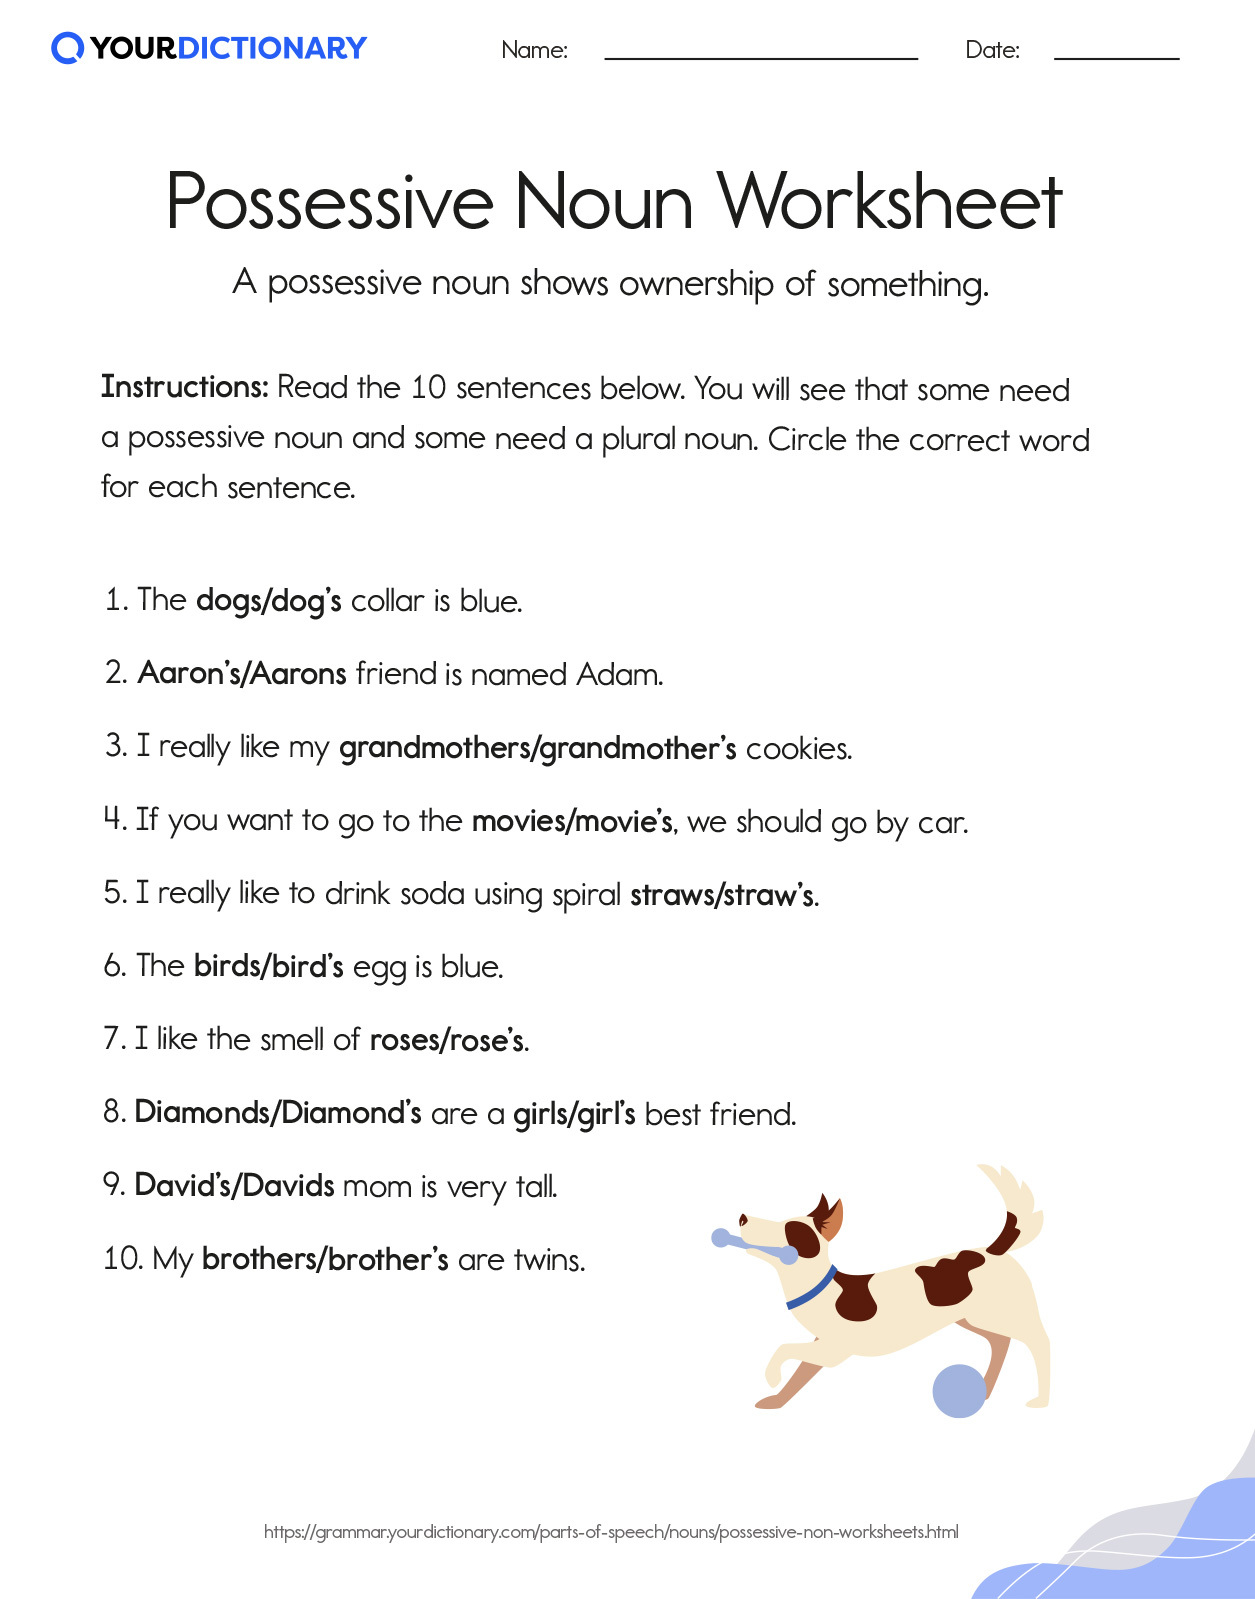 Possessive Noun Worksheet